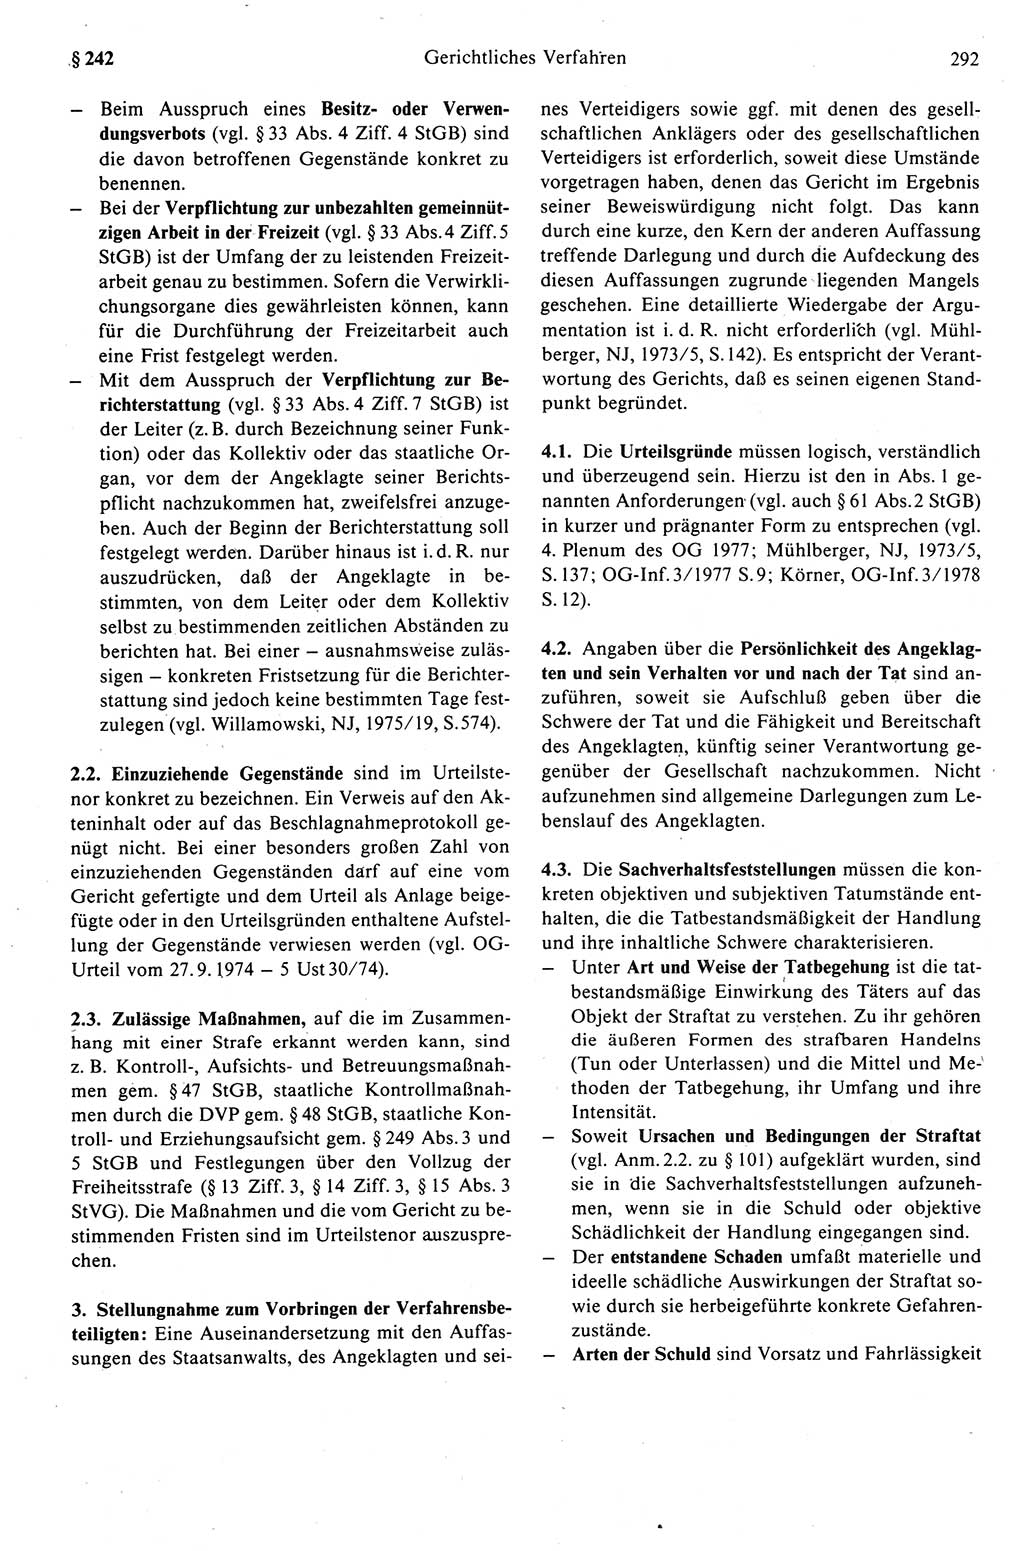 Strafprozeßrecht der DDR (Deutsche Demokratische Republik), Kommentar zur Strafprozeßordnung (StPO) 1989, Seite 292 (Strafprozeßr. DDR Komm. StPO 1989, S. 292)